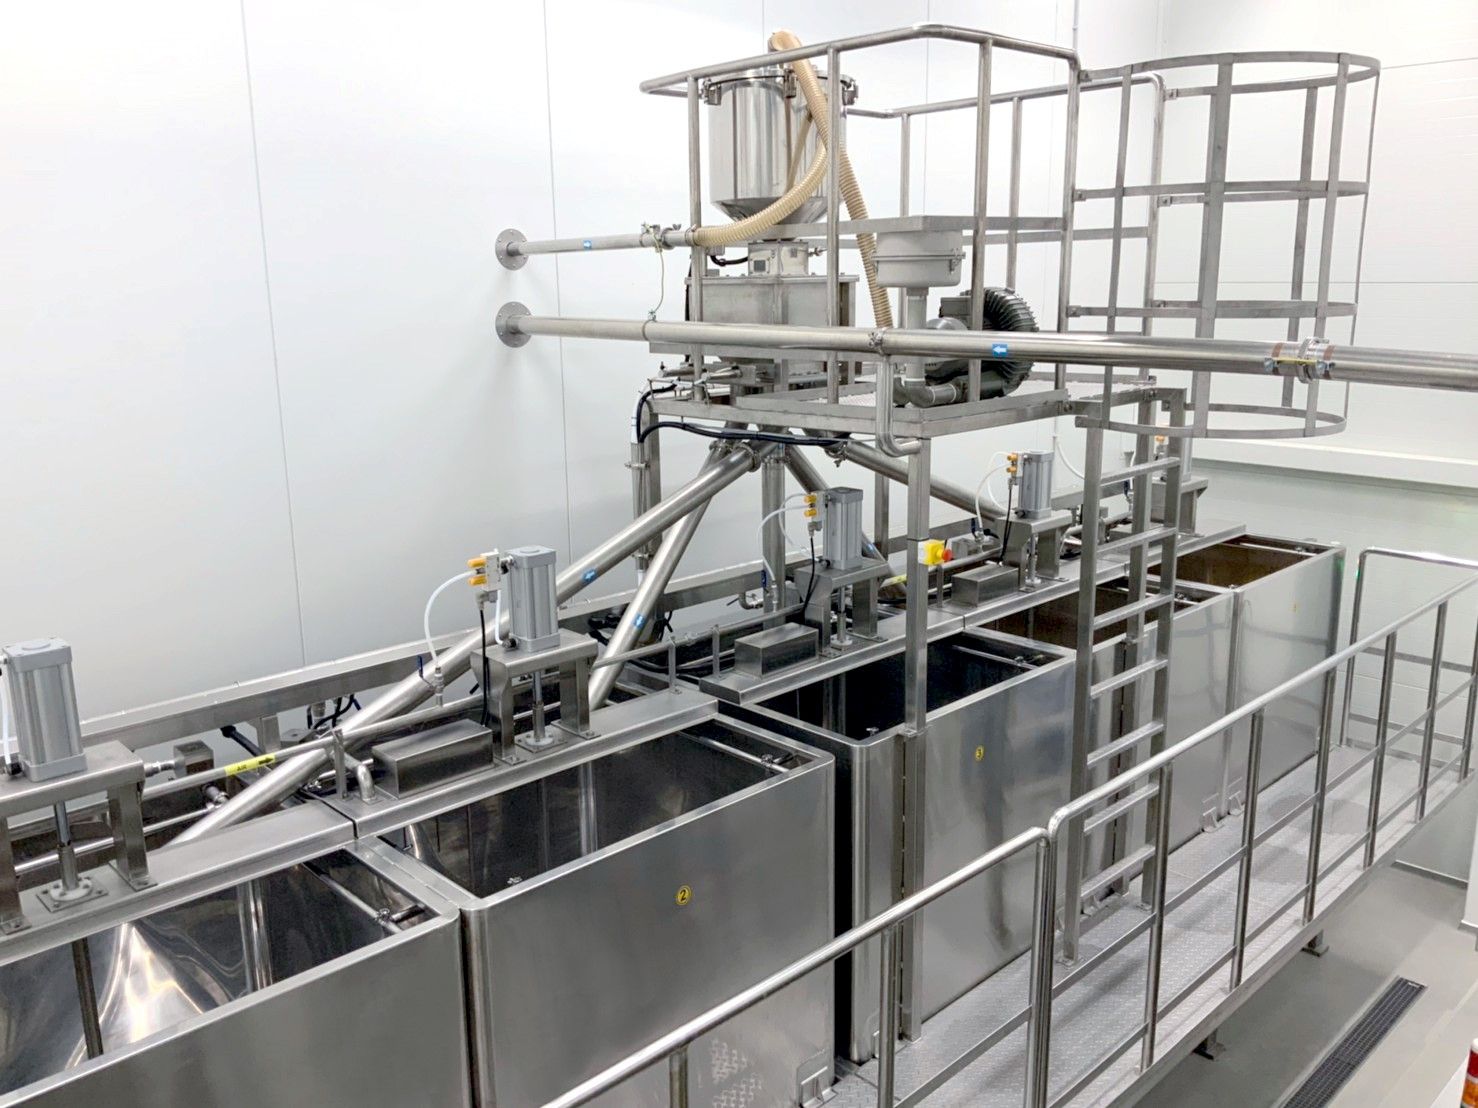 Automatické řízení doby namáčení pro zajištění kvality namáčení fazolí a stabilního poměru namáčení fazolí, abychom zajistili stabilní výtěžek extrakce sójového mléka během extrakčního procesu.